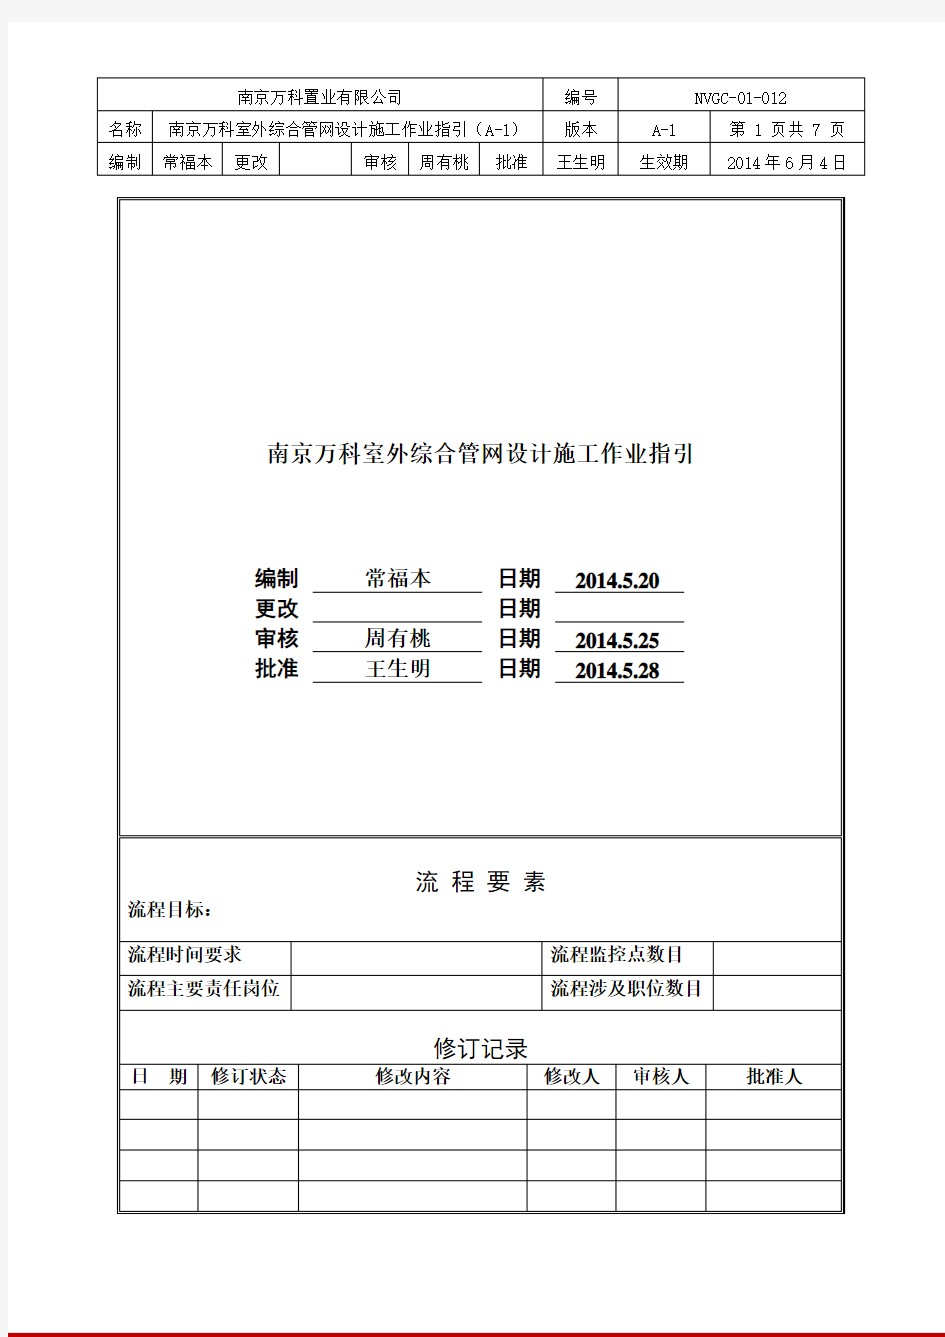 南京万科室外综合管网设计施工作业指引(A-1)(1)